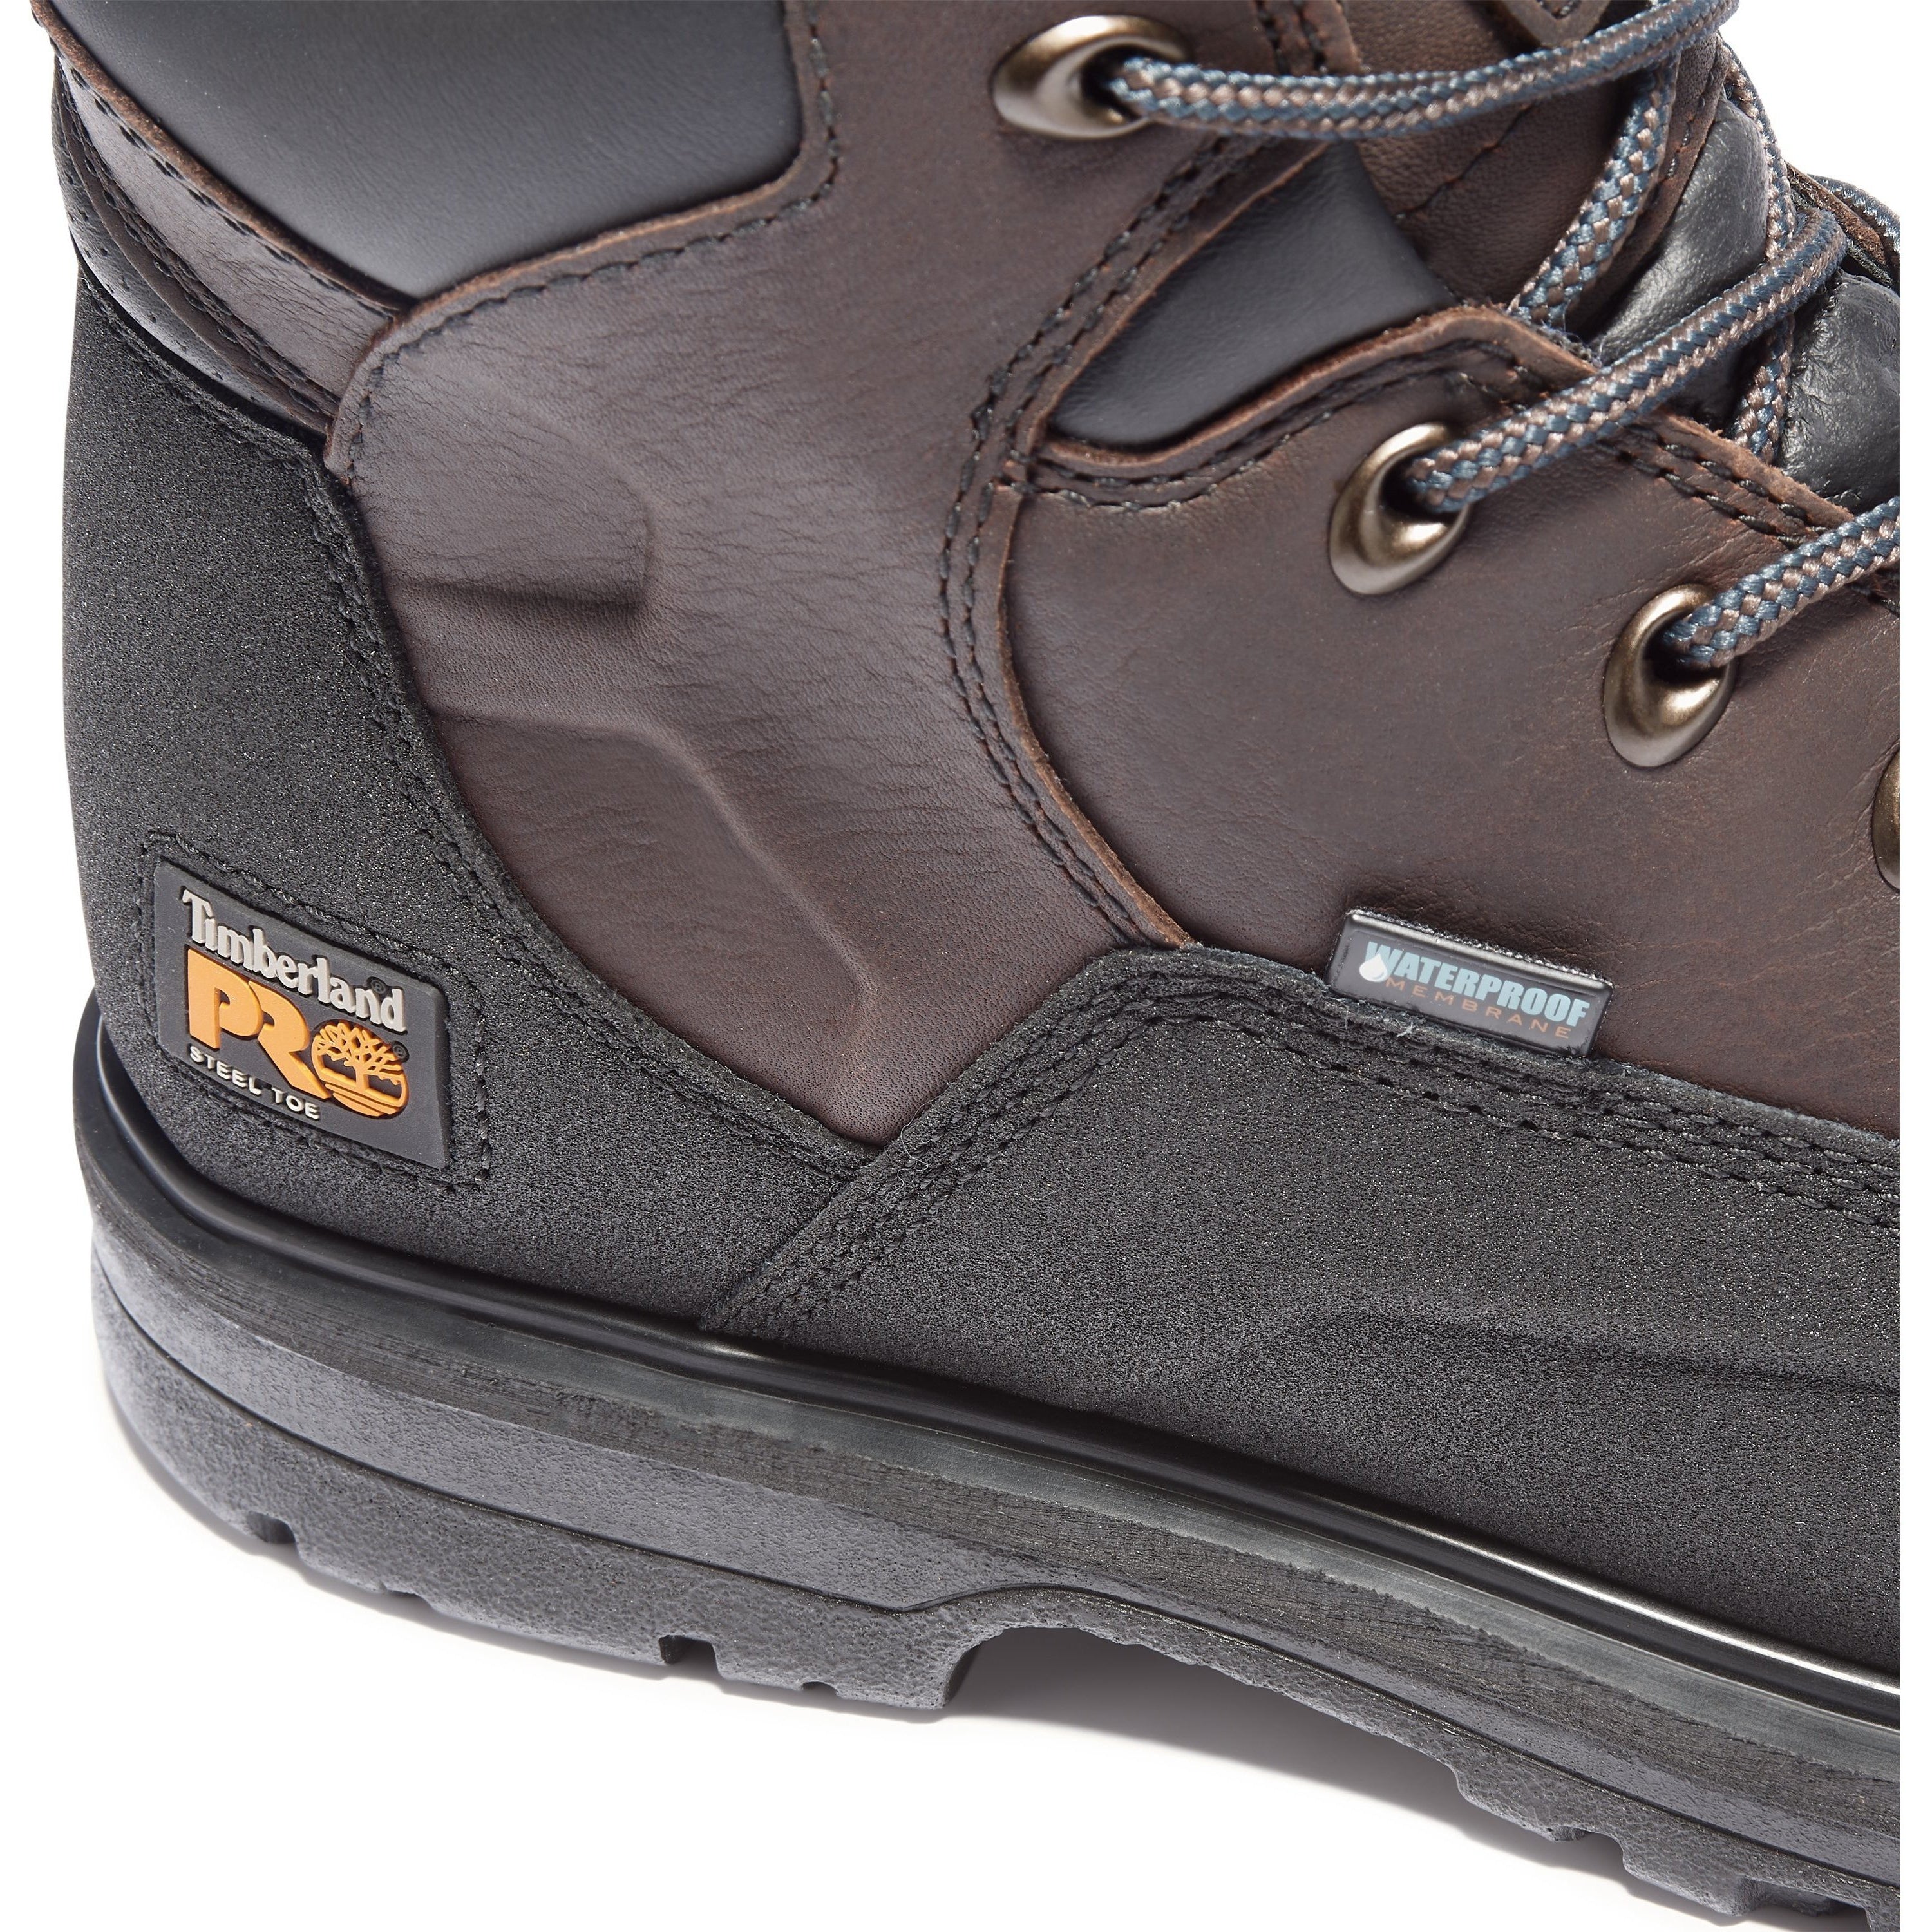 Timberland PRO Men's Powerwelt 6" Steel Toe WP Work Boot - TB147001242  - Overlook Boots